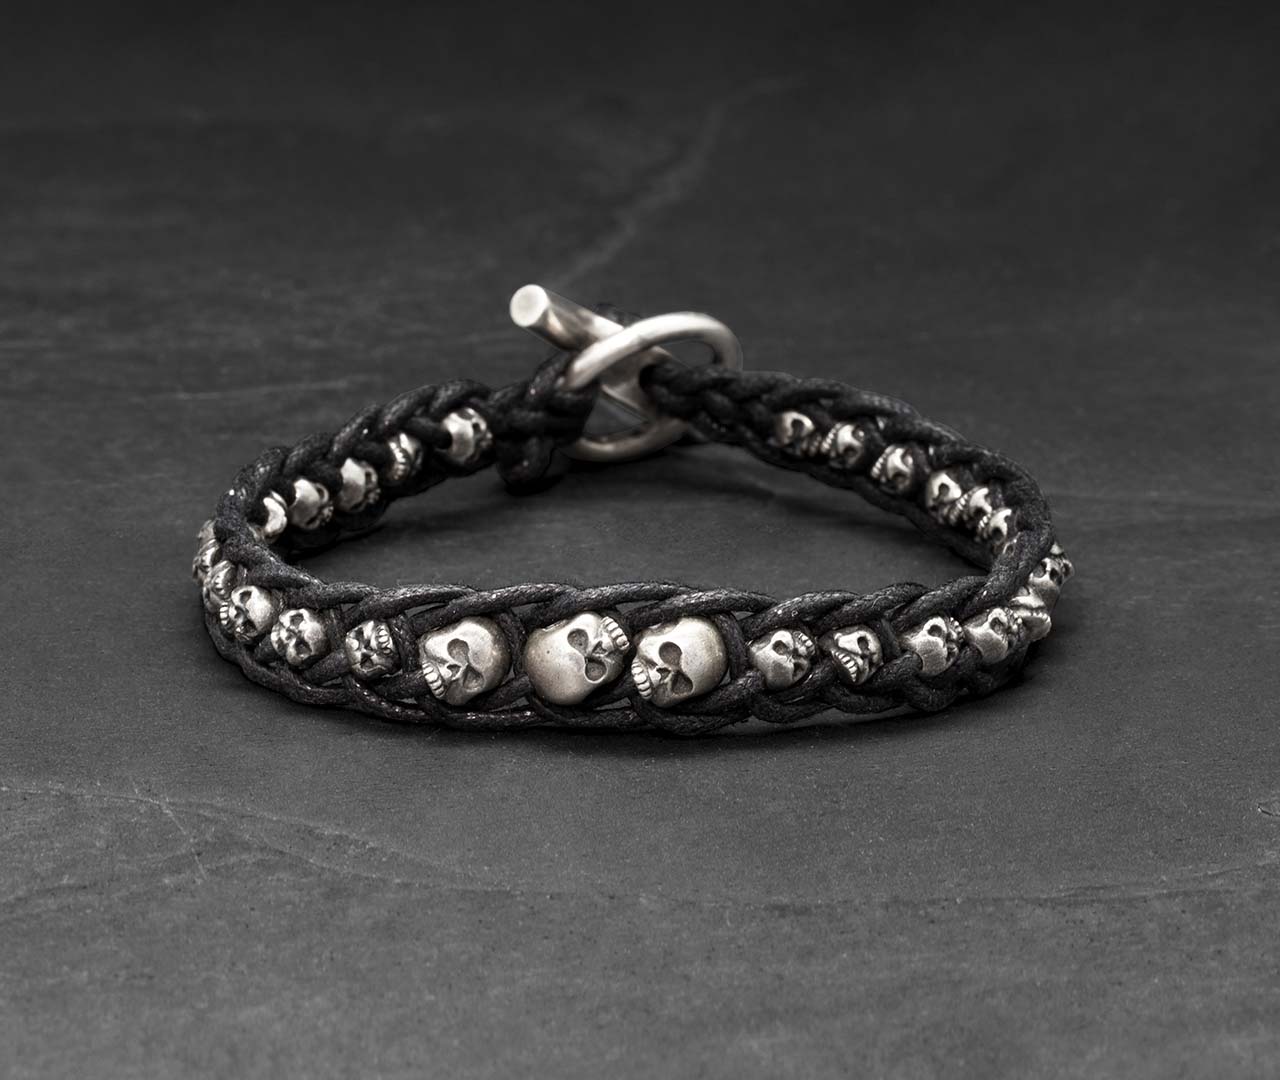 Single skull braid bracelet